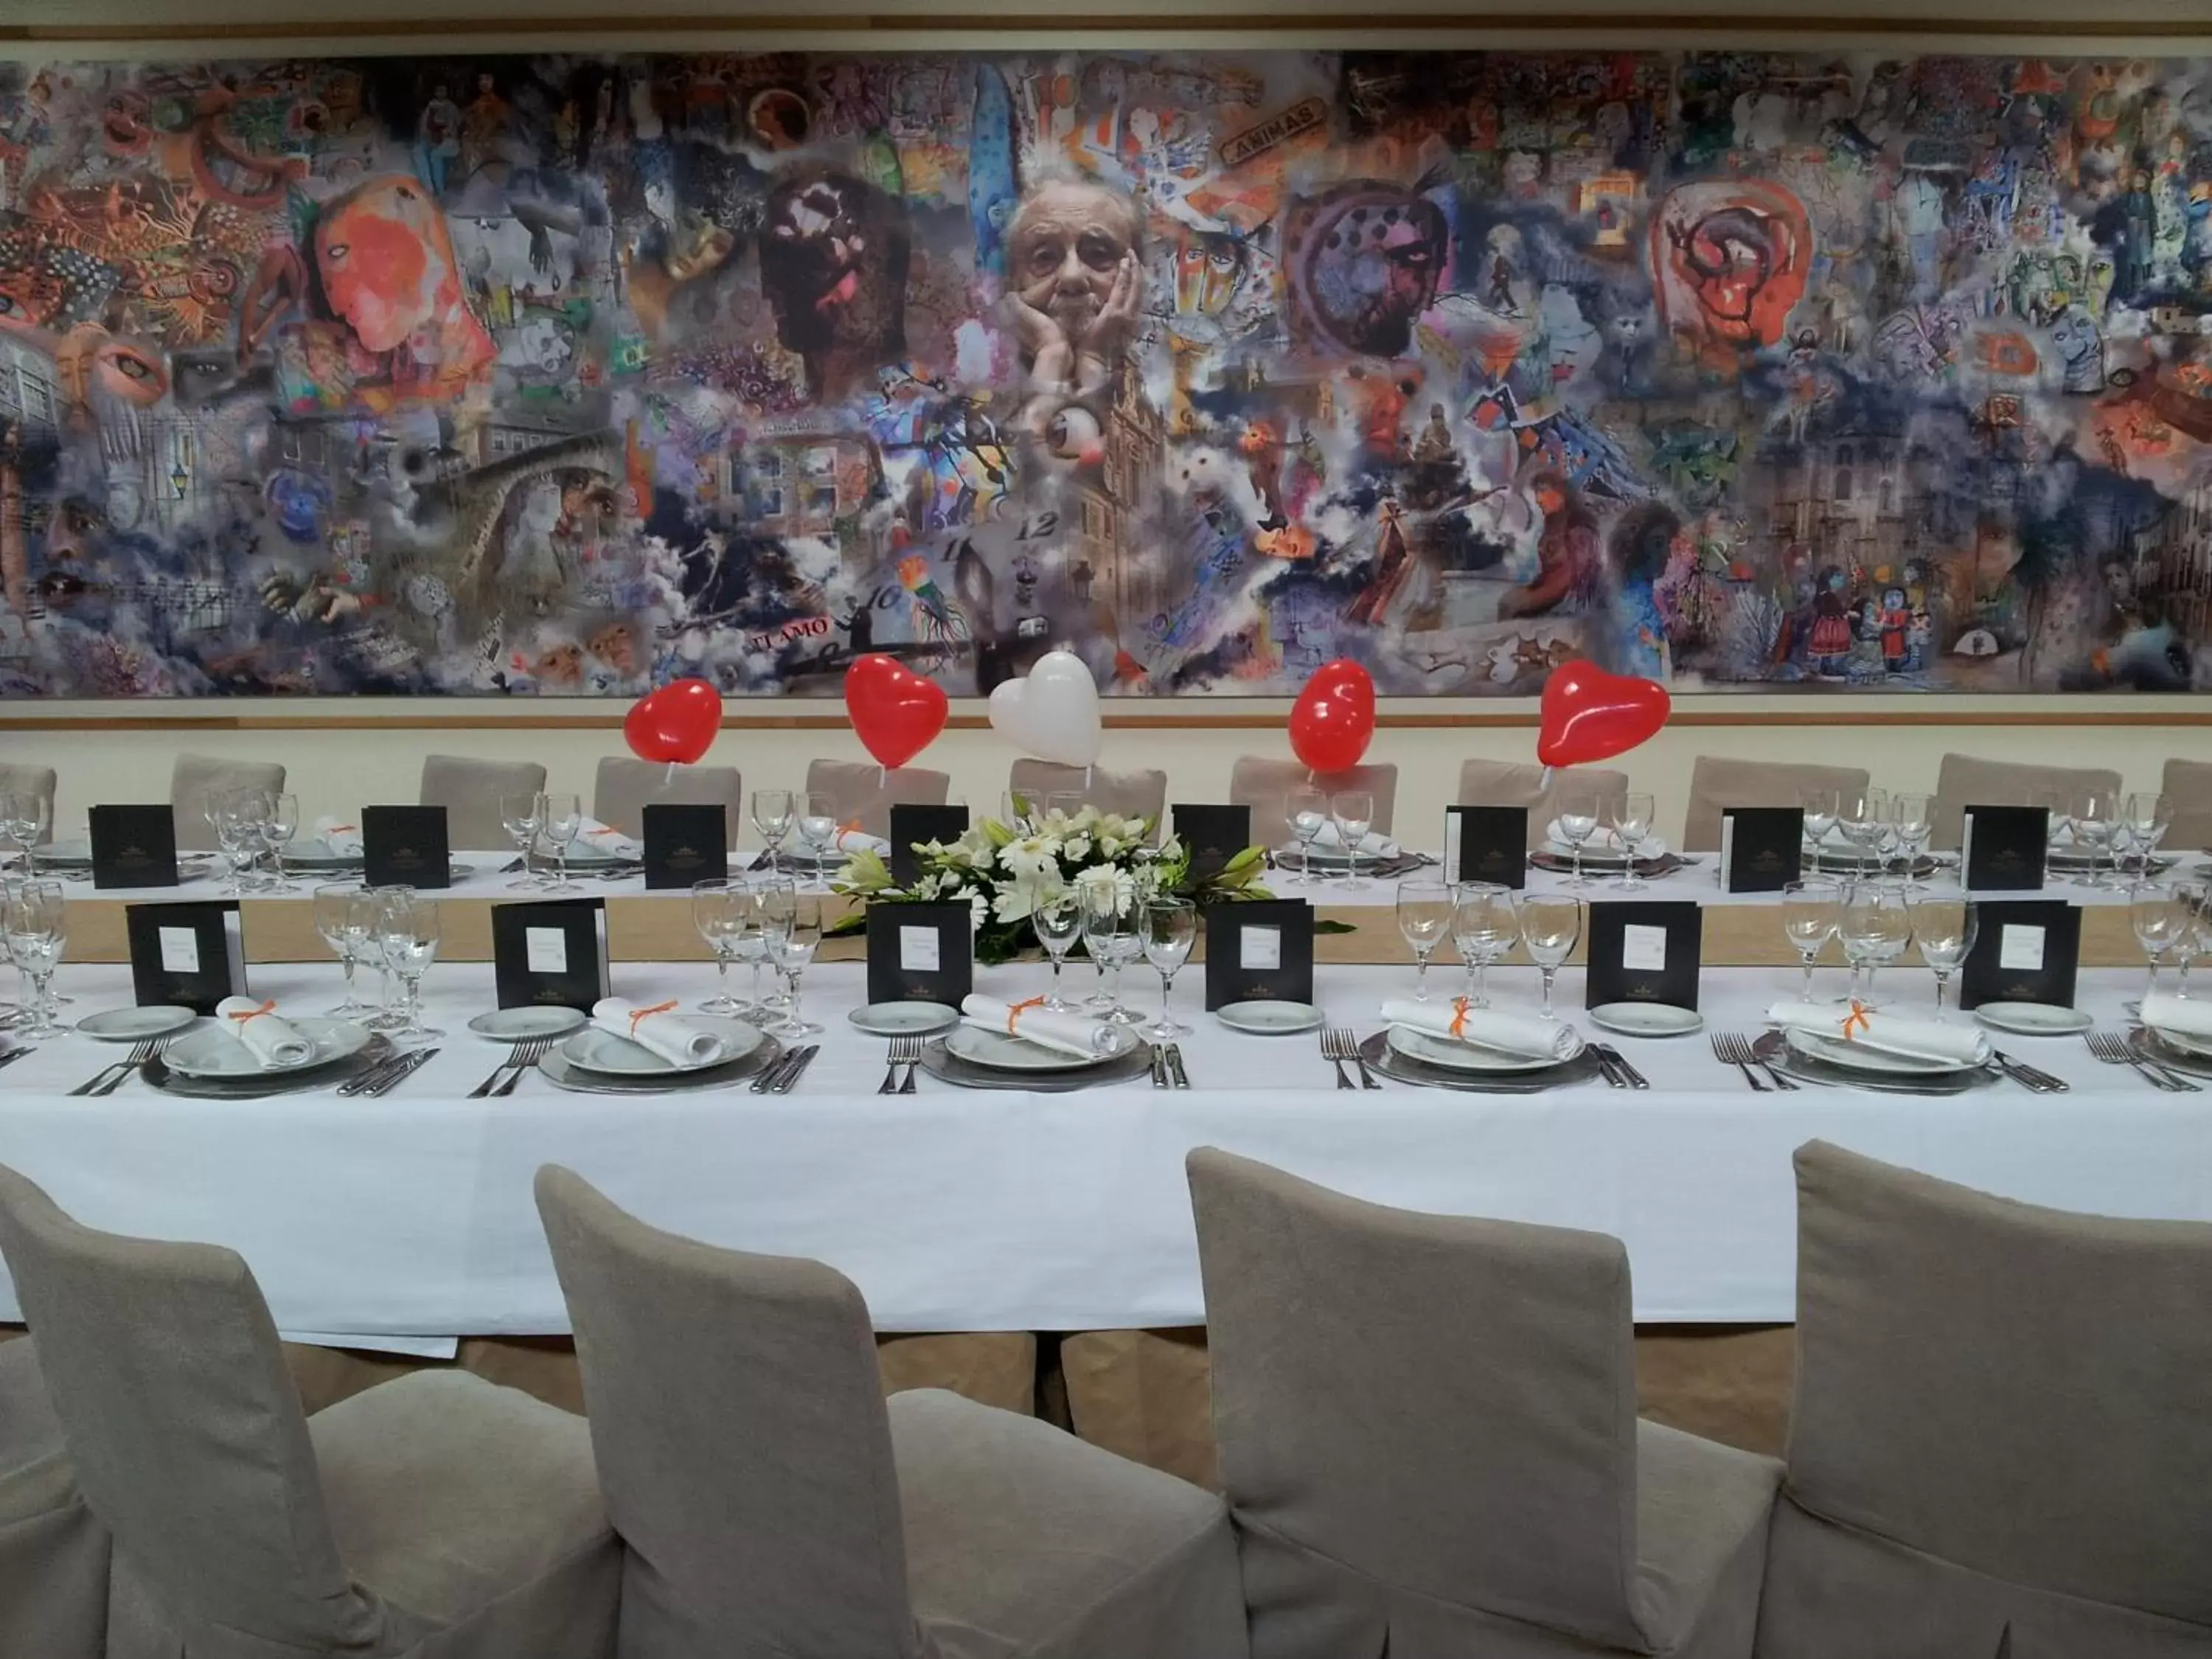 Banquet/Function facilities, Banquet Facilities in Parador de Villafranca del Bierzo